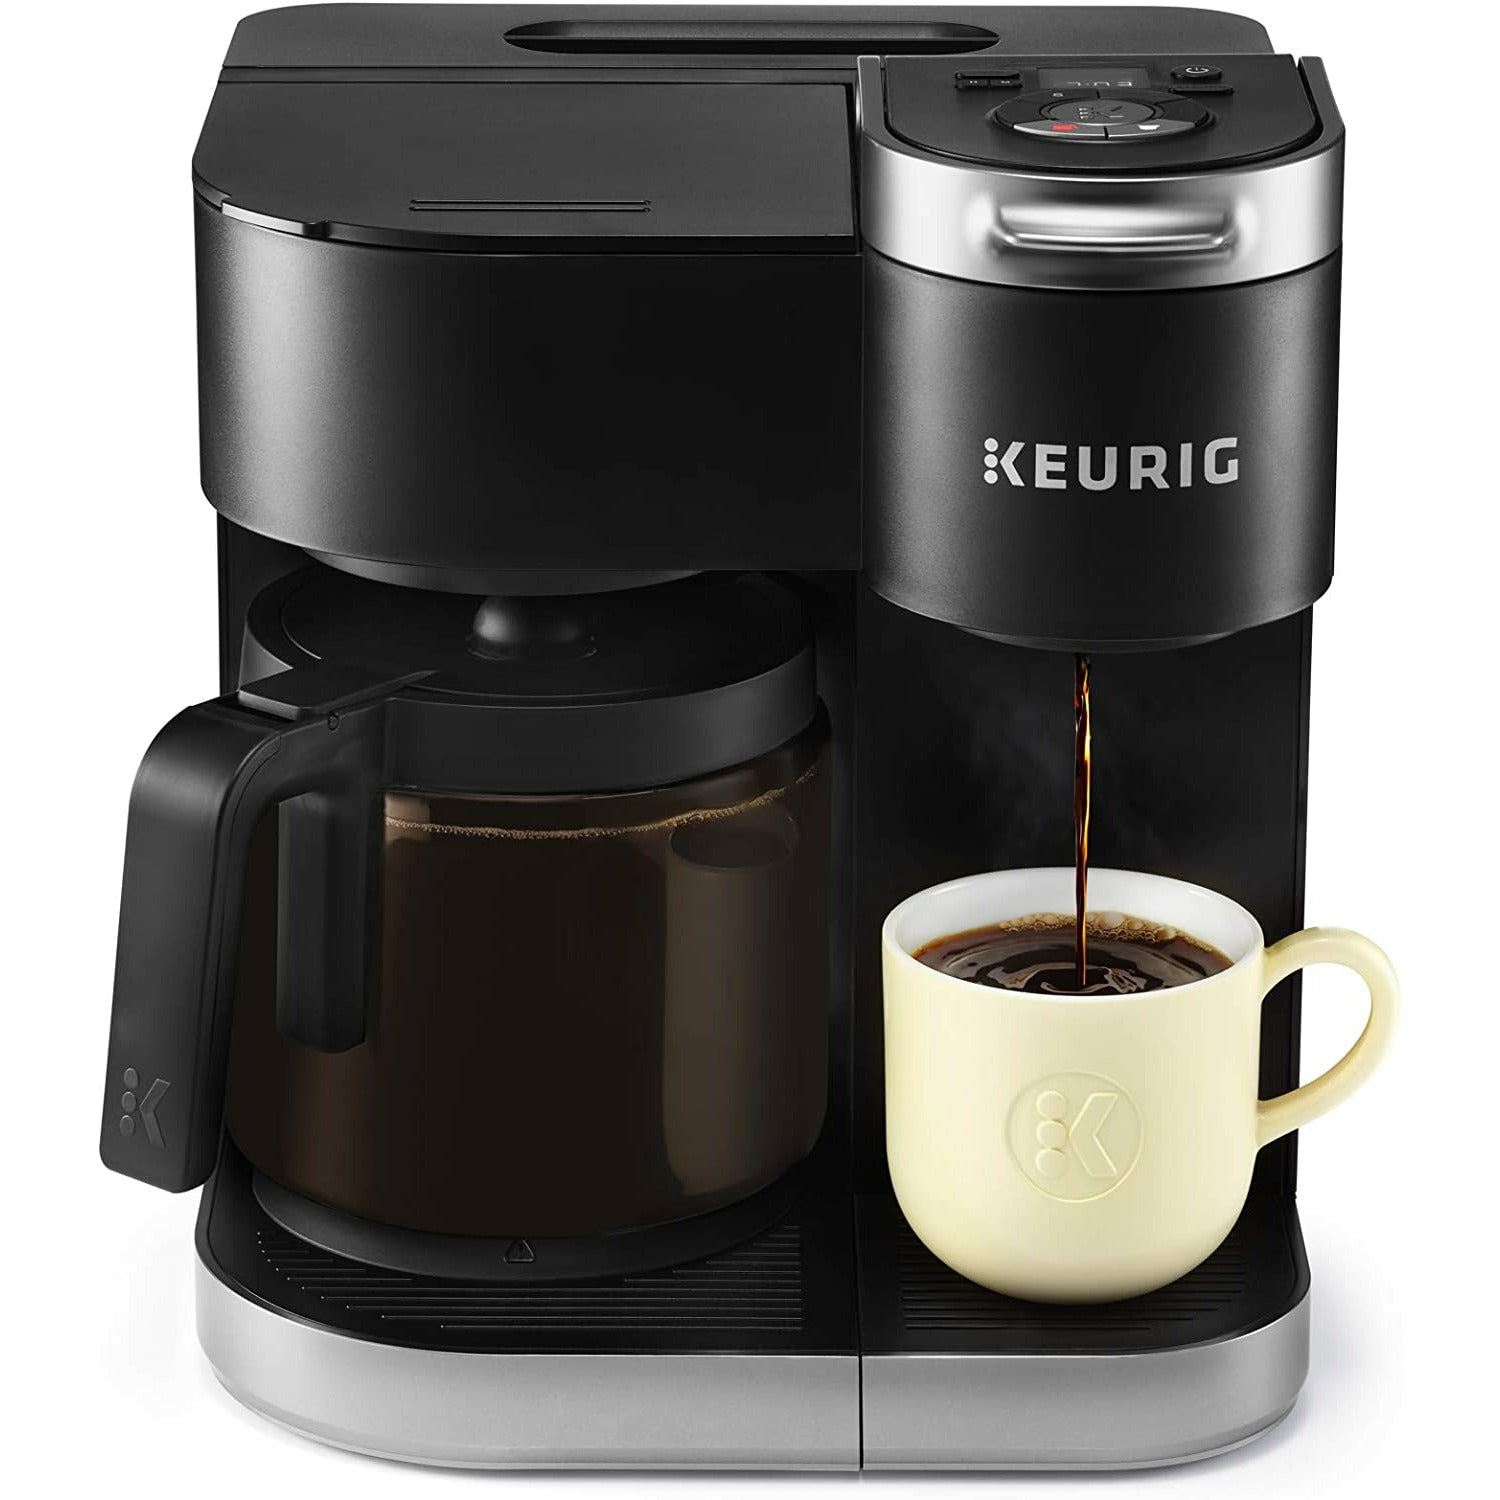 Keurig K-Duo Essentials Coffee Maker, Black - Costless WHOLESALE - Online  Shopping!